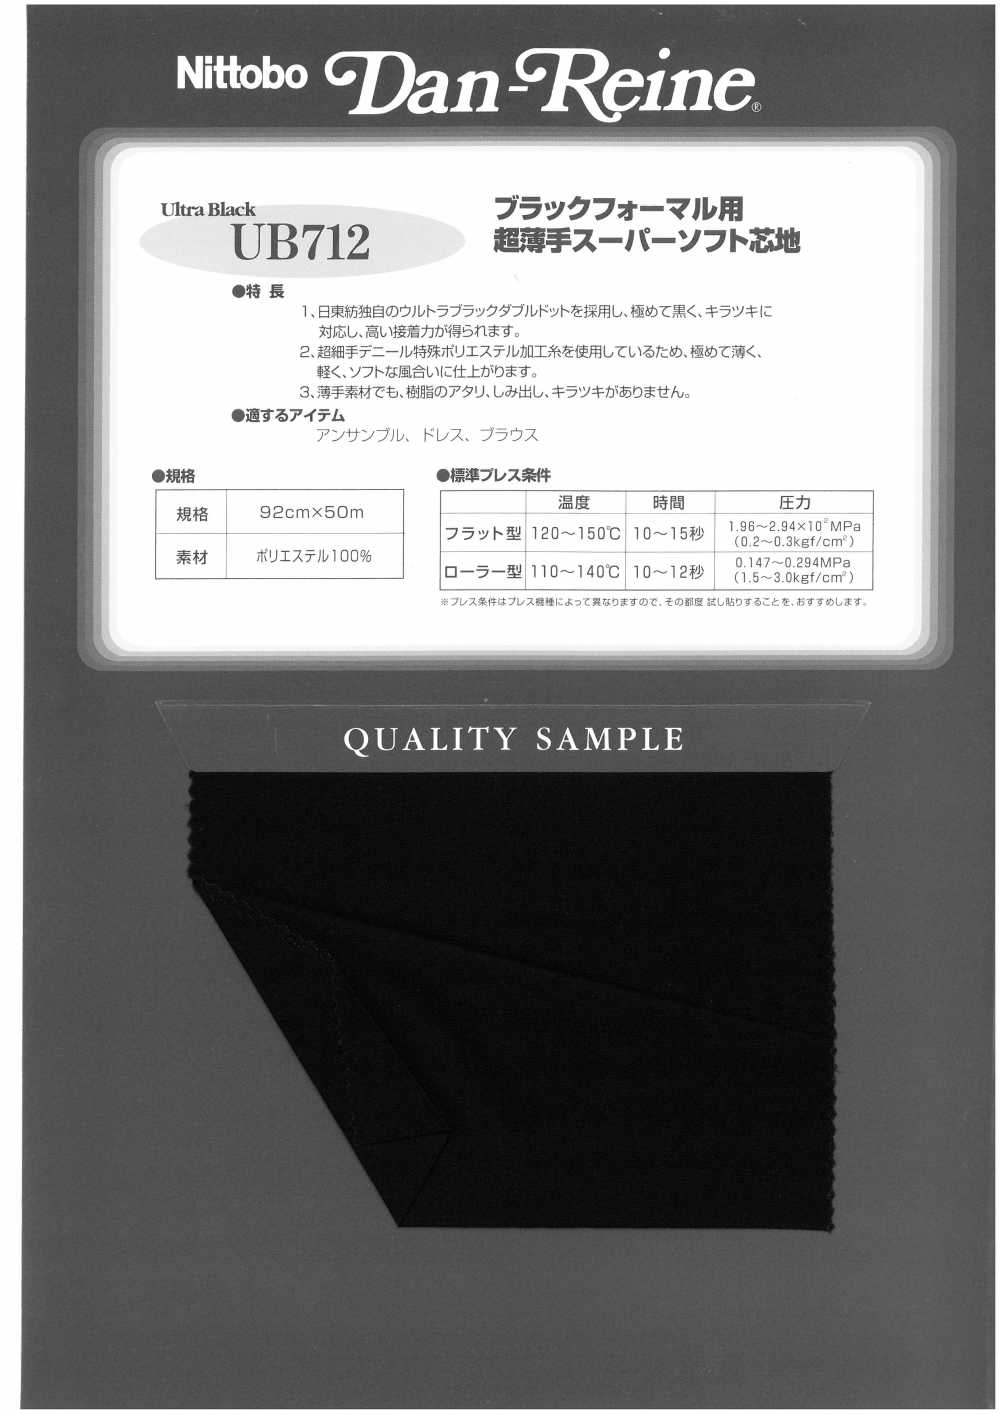 UB712 블랙 포멀 용 울트라 얇은 슈퍼 부드러운 심지 닛토보 (닛토보인터라이닝)